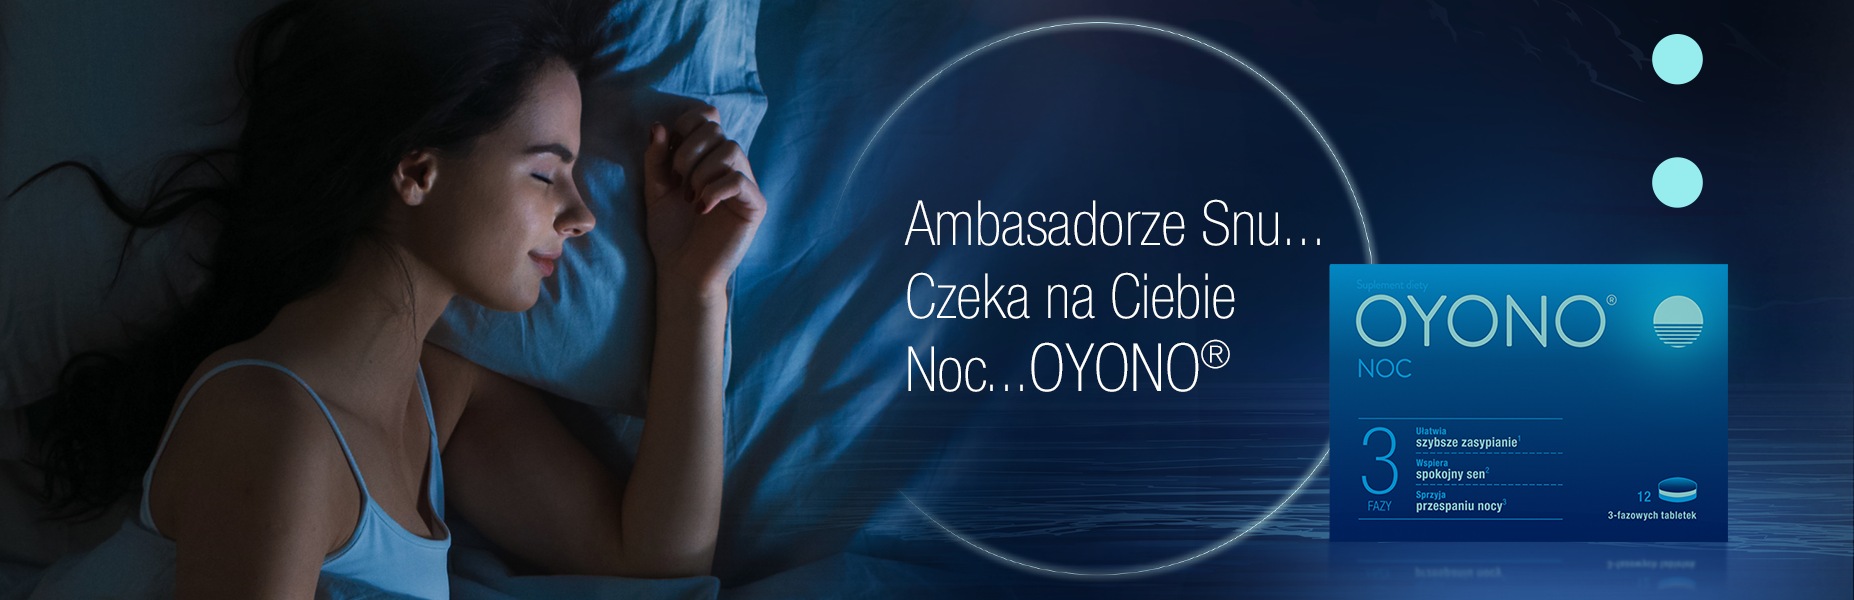 Agencja Chromatique przygotowała kampanię ambasadorską OYONO NOC®